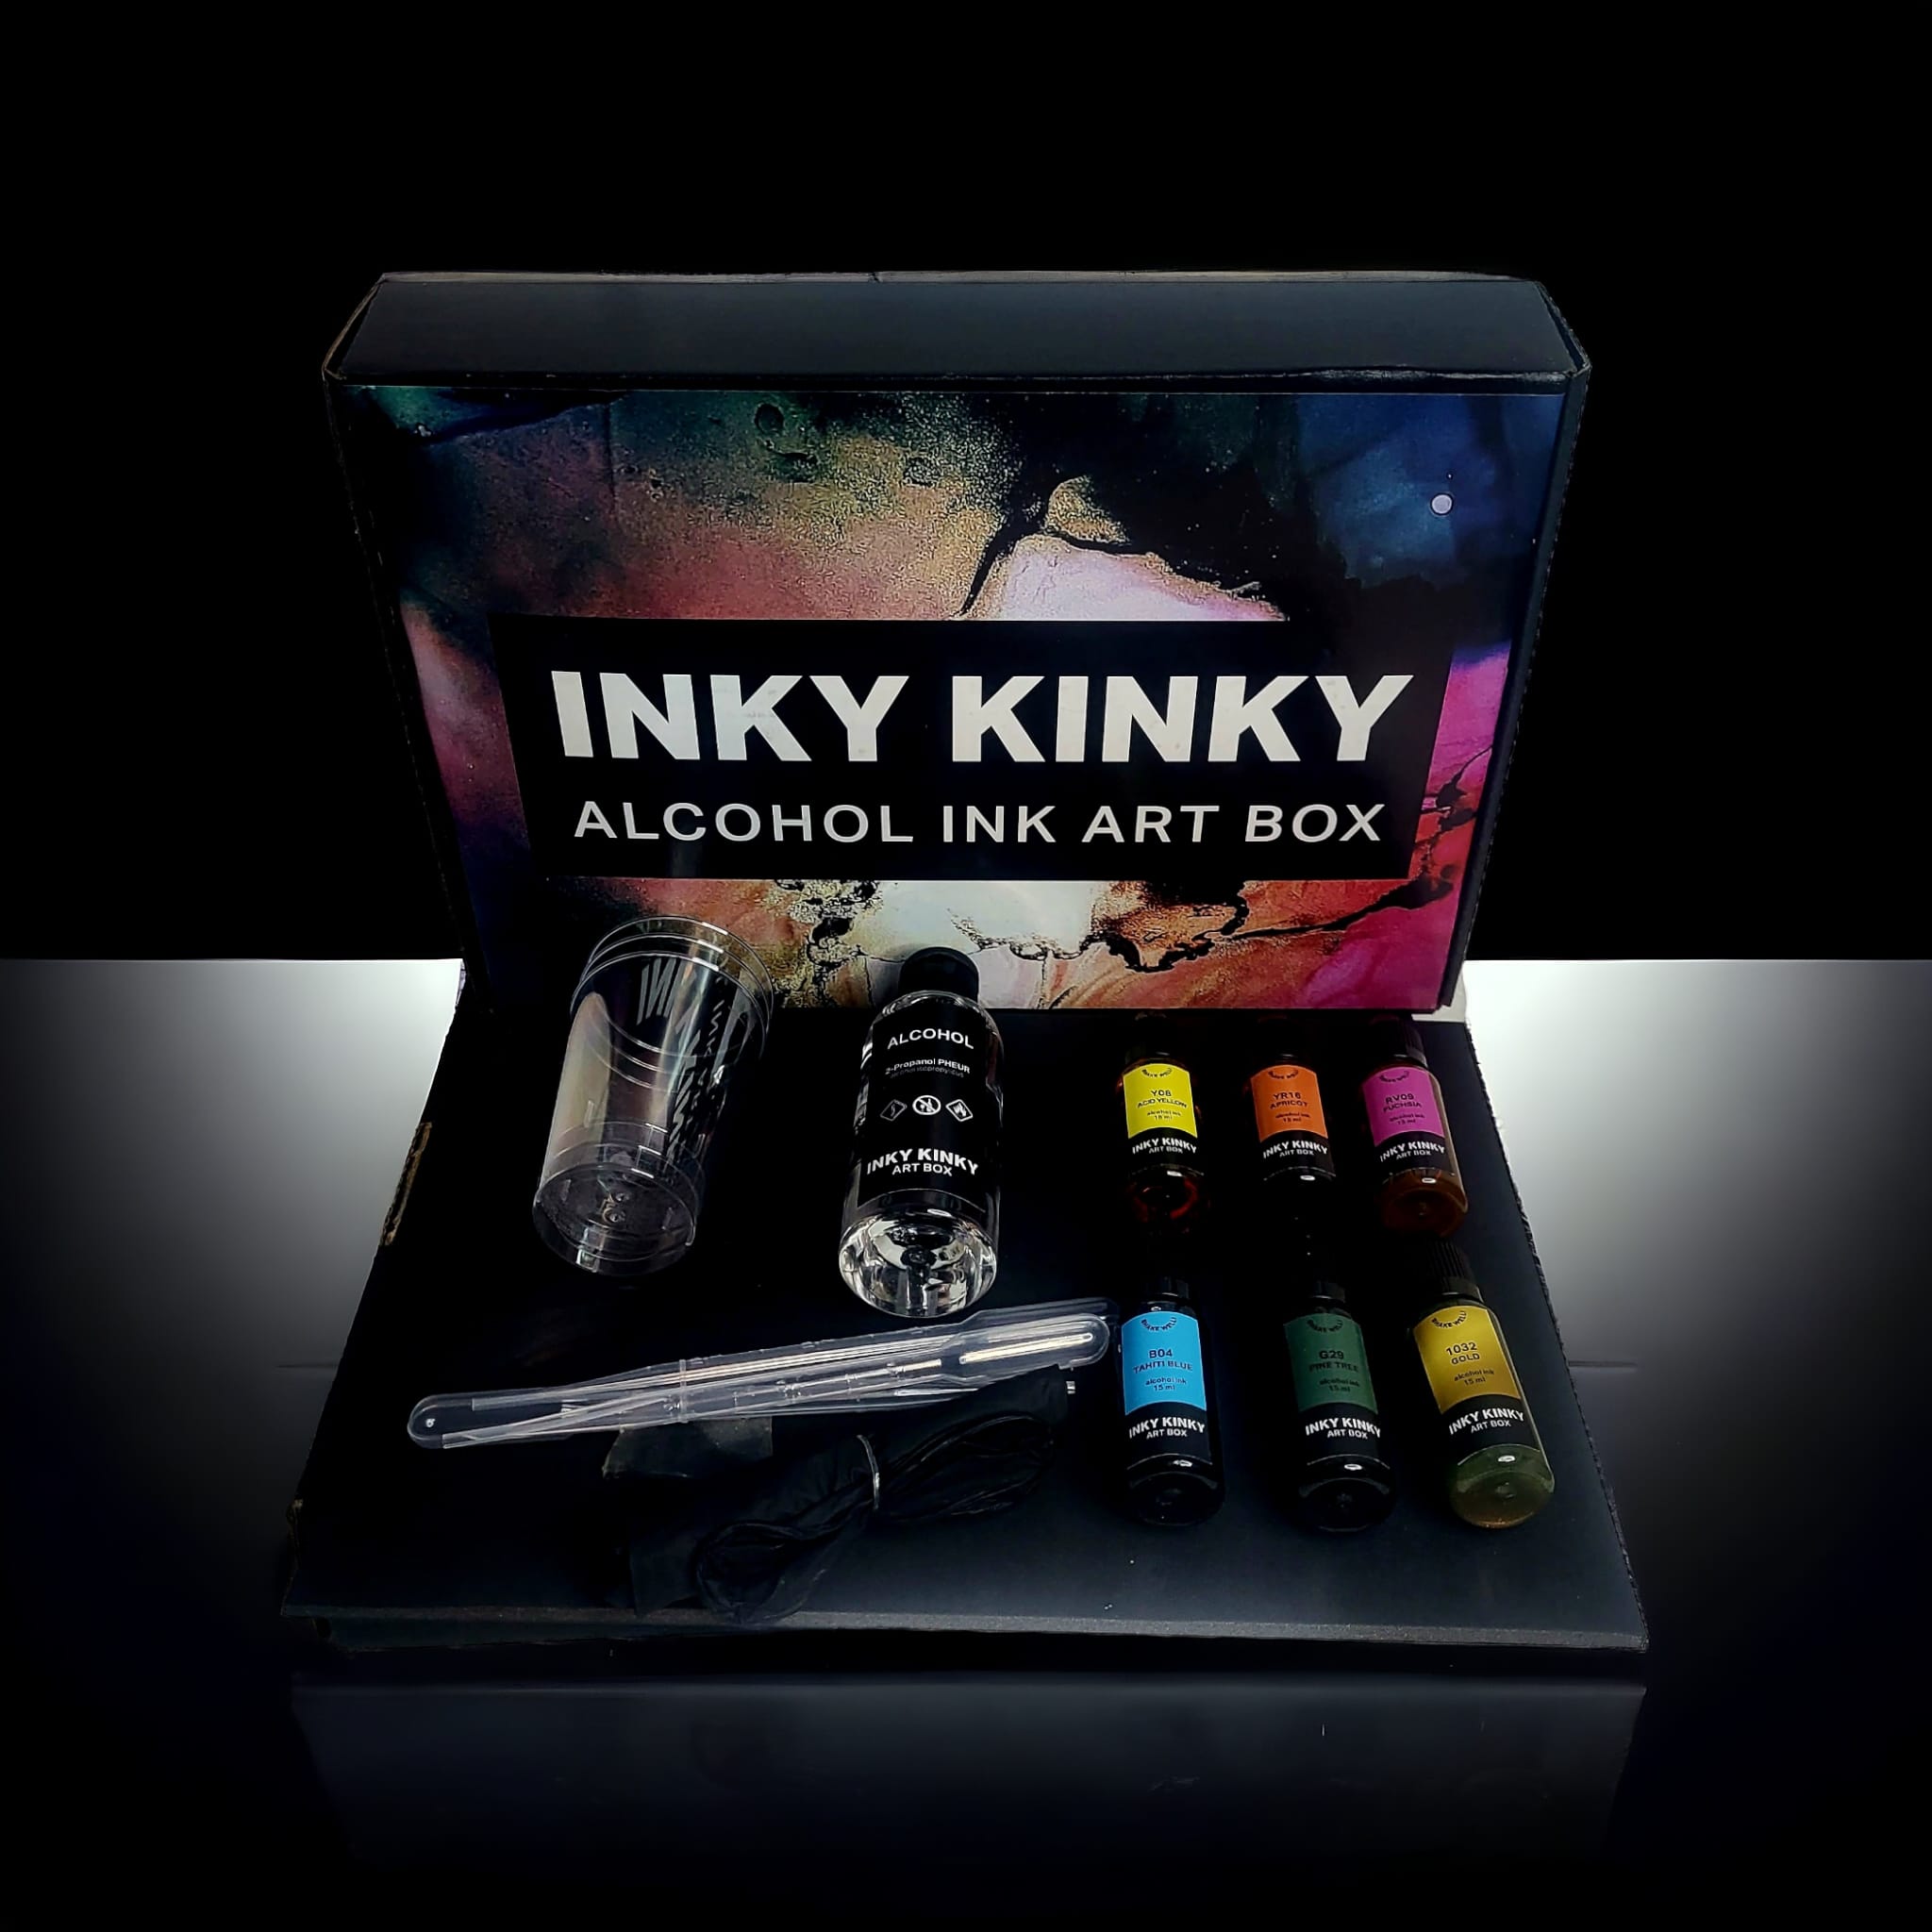 INKY KINKY ART BOX OPEN